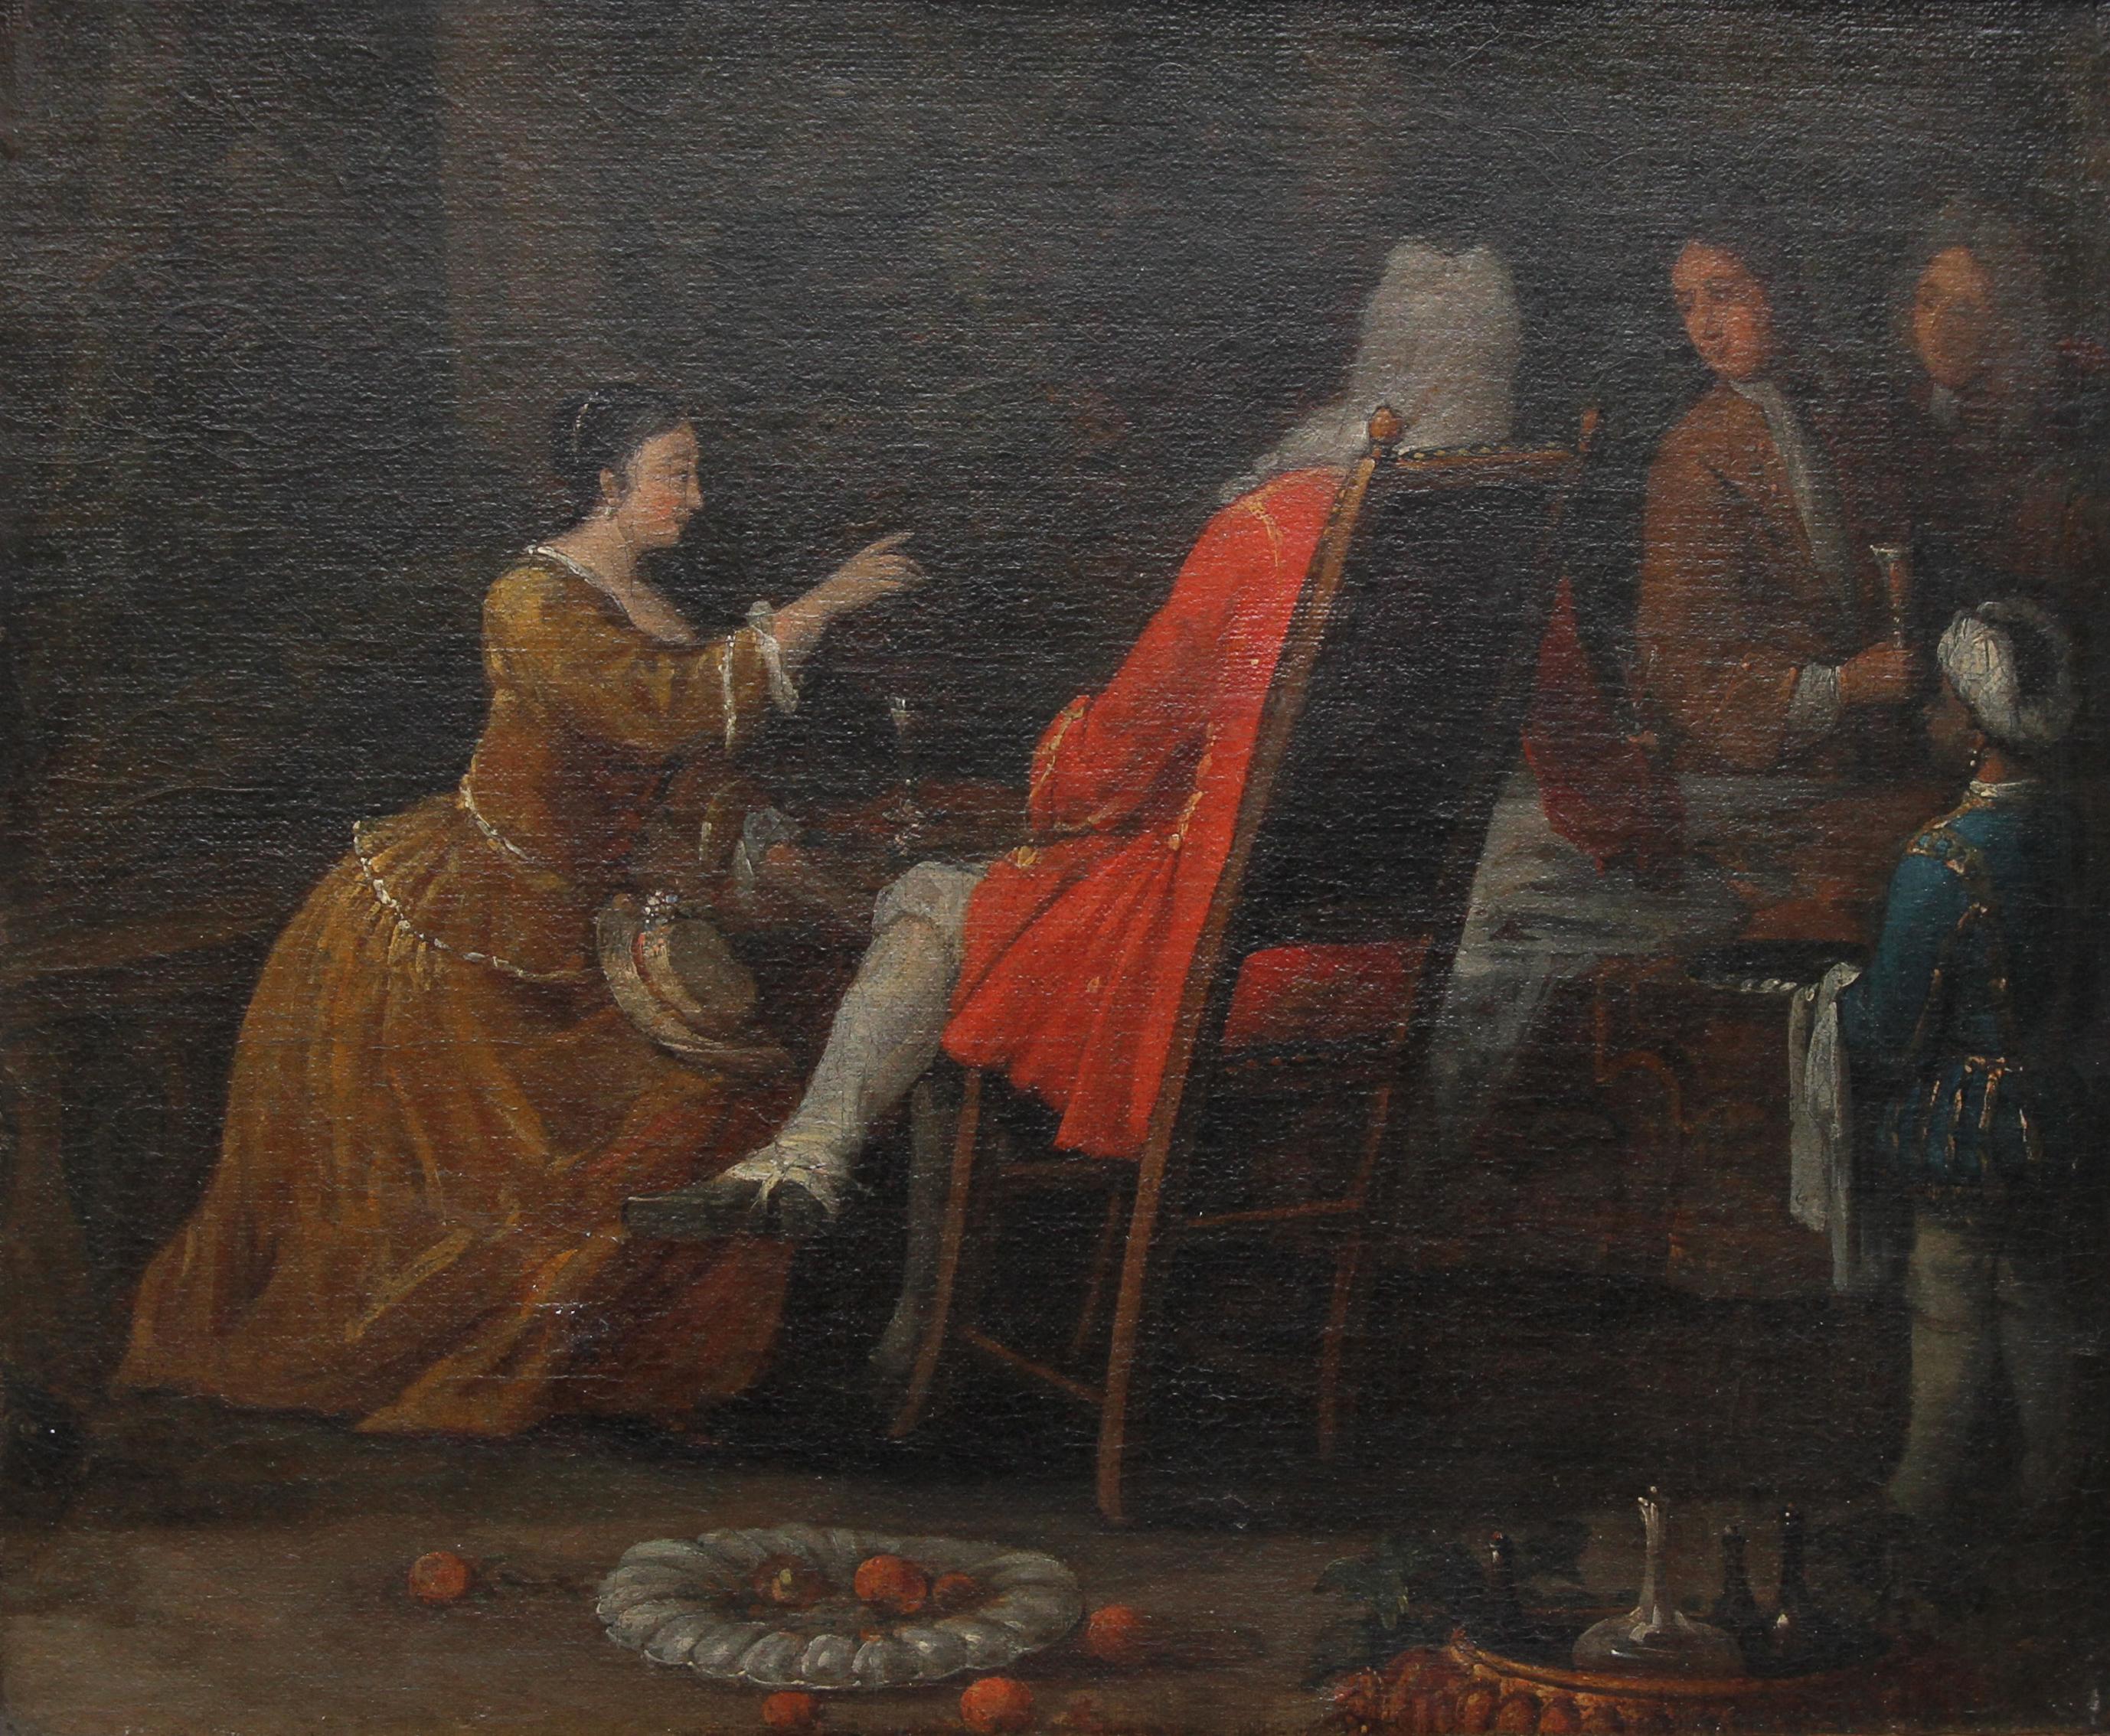 Serviergeschirr – Britisches Ölgemälde eines alten Meisters aus dem 18. Jahrhundert, historisches Interieur – Painting von (Circle of) William Hogarth